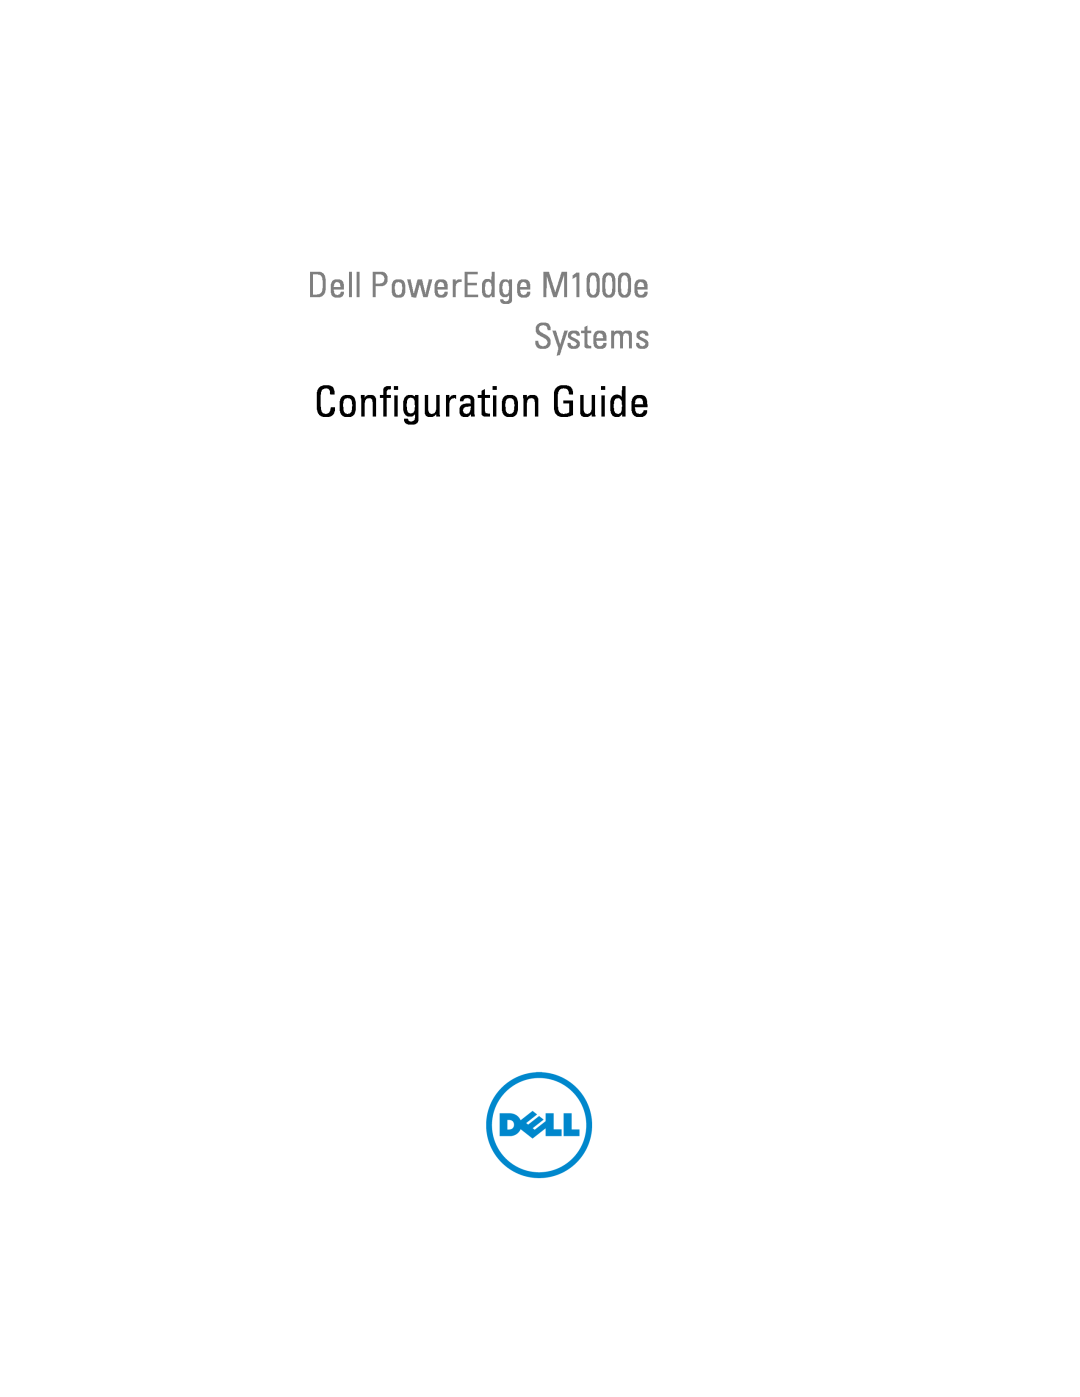 Dell M1000E manual Configuration Guide, Dell PowerEdge M1000e Systems 